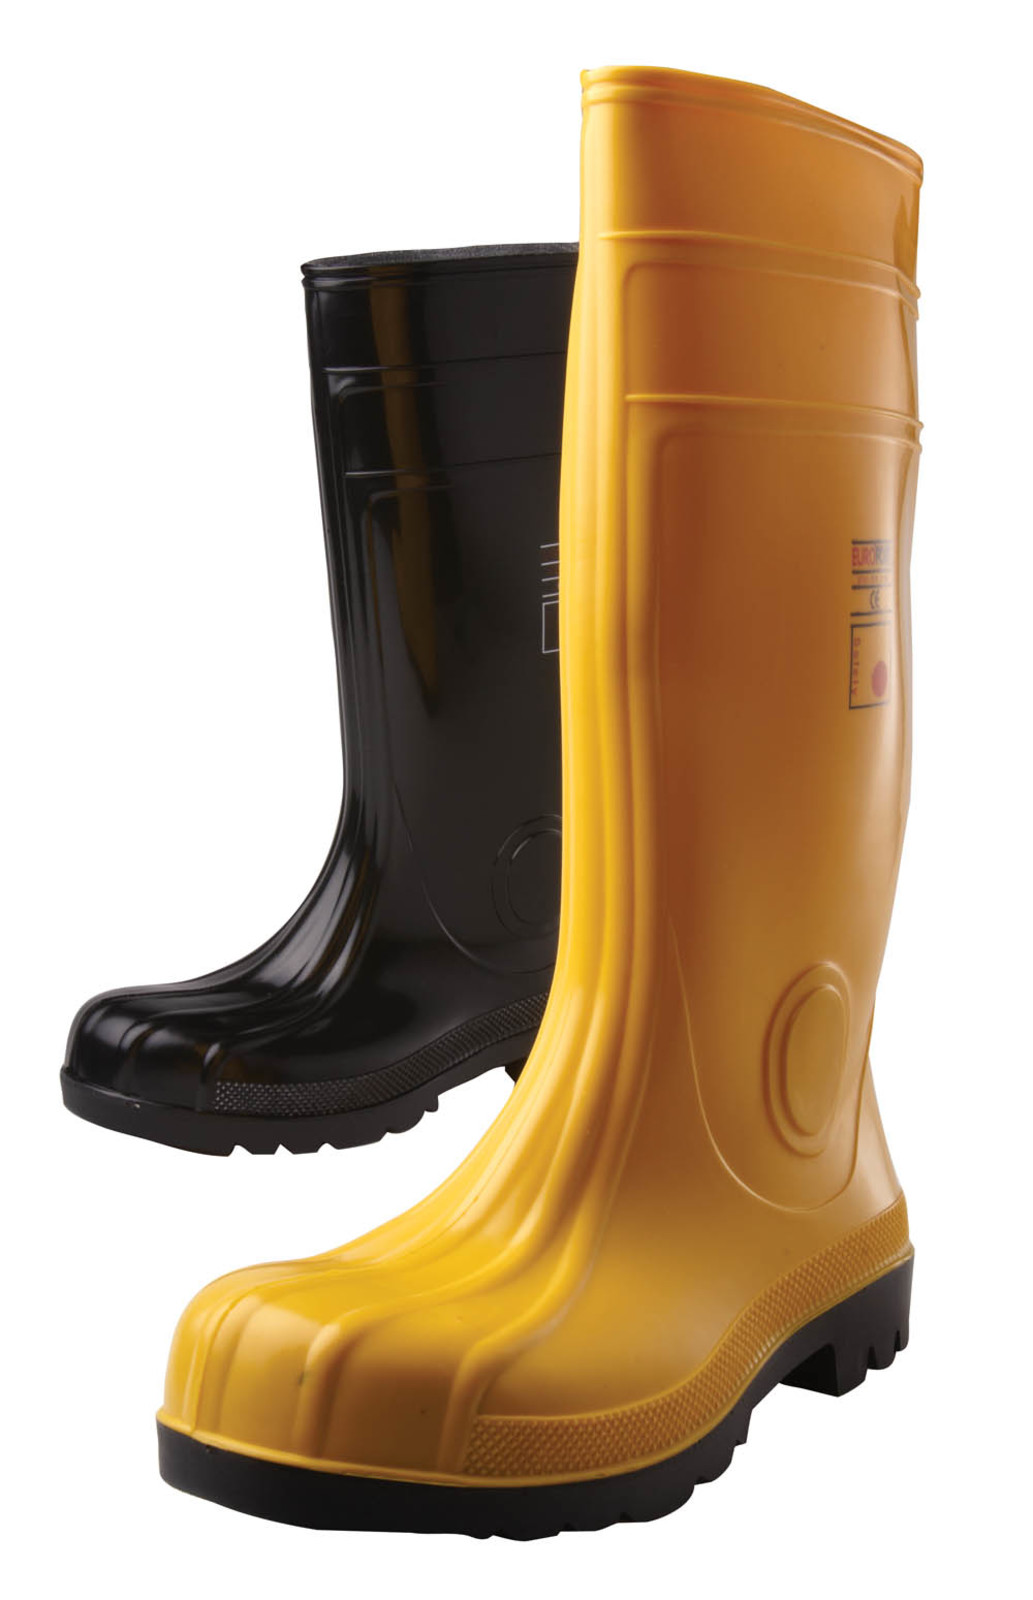 Gumáky Boots Eurofort  S5 - veľkosť: 43, farba: čierna